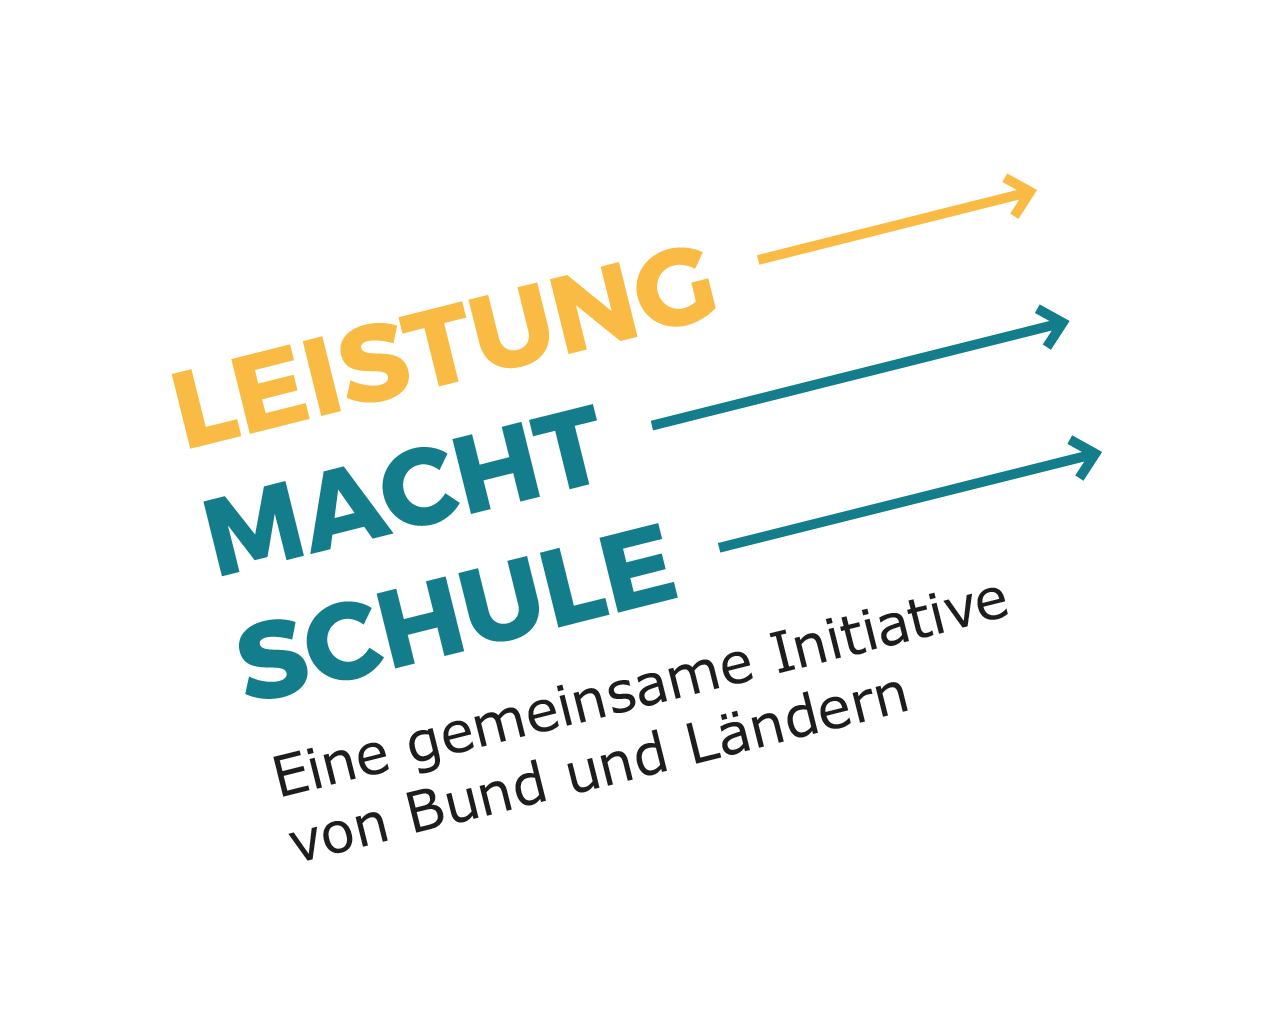 leistung_macht_schule_logo_munterzeile_online